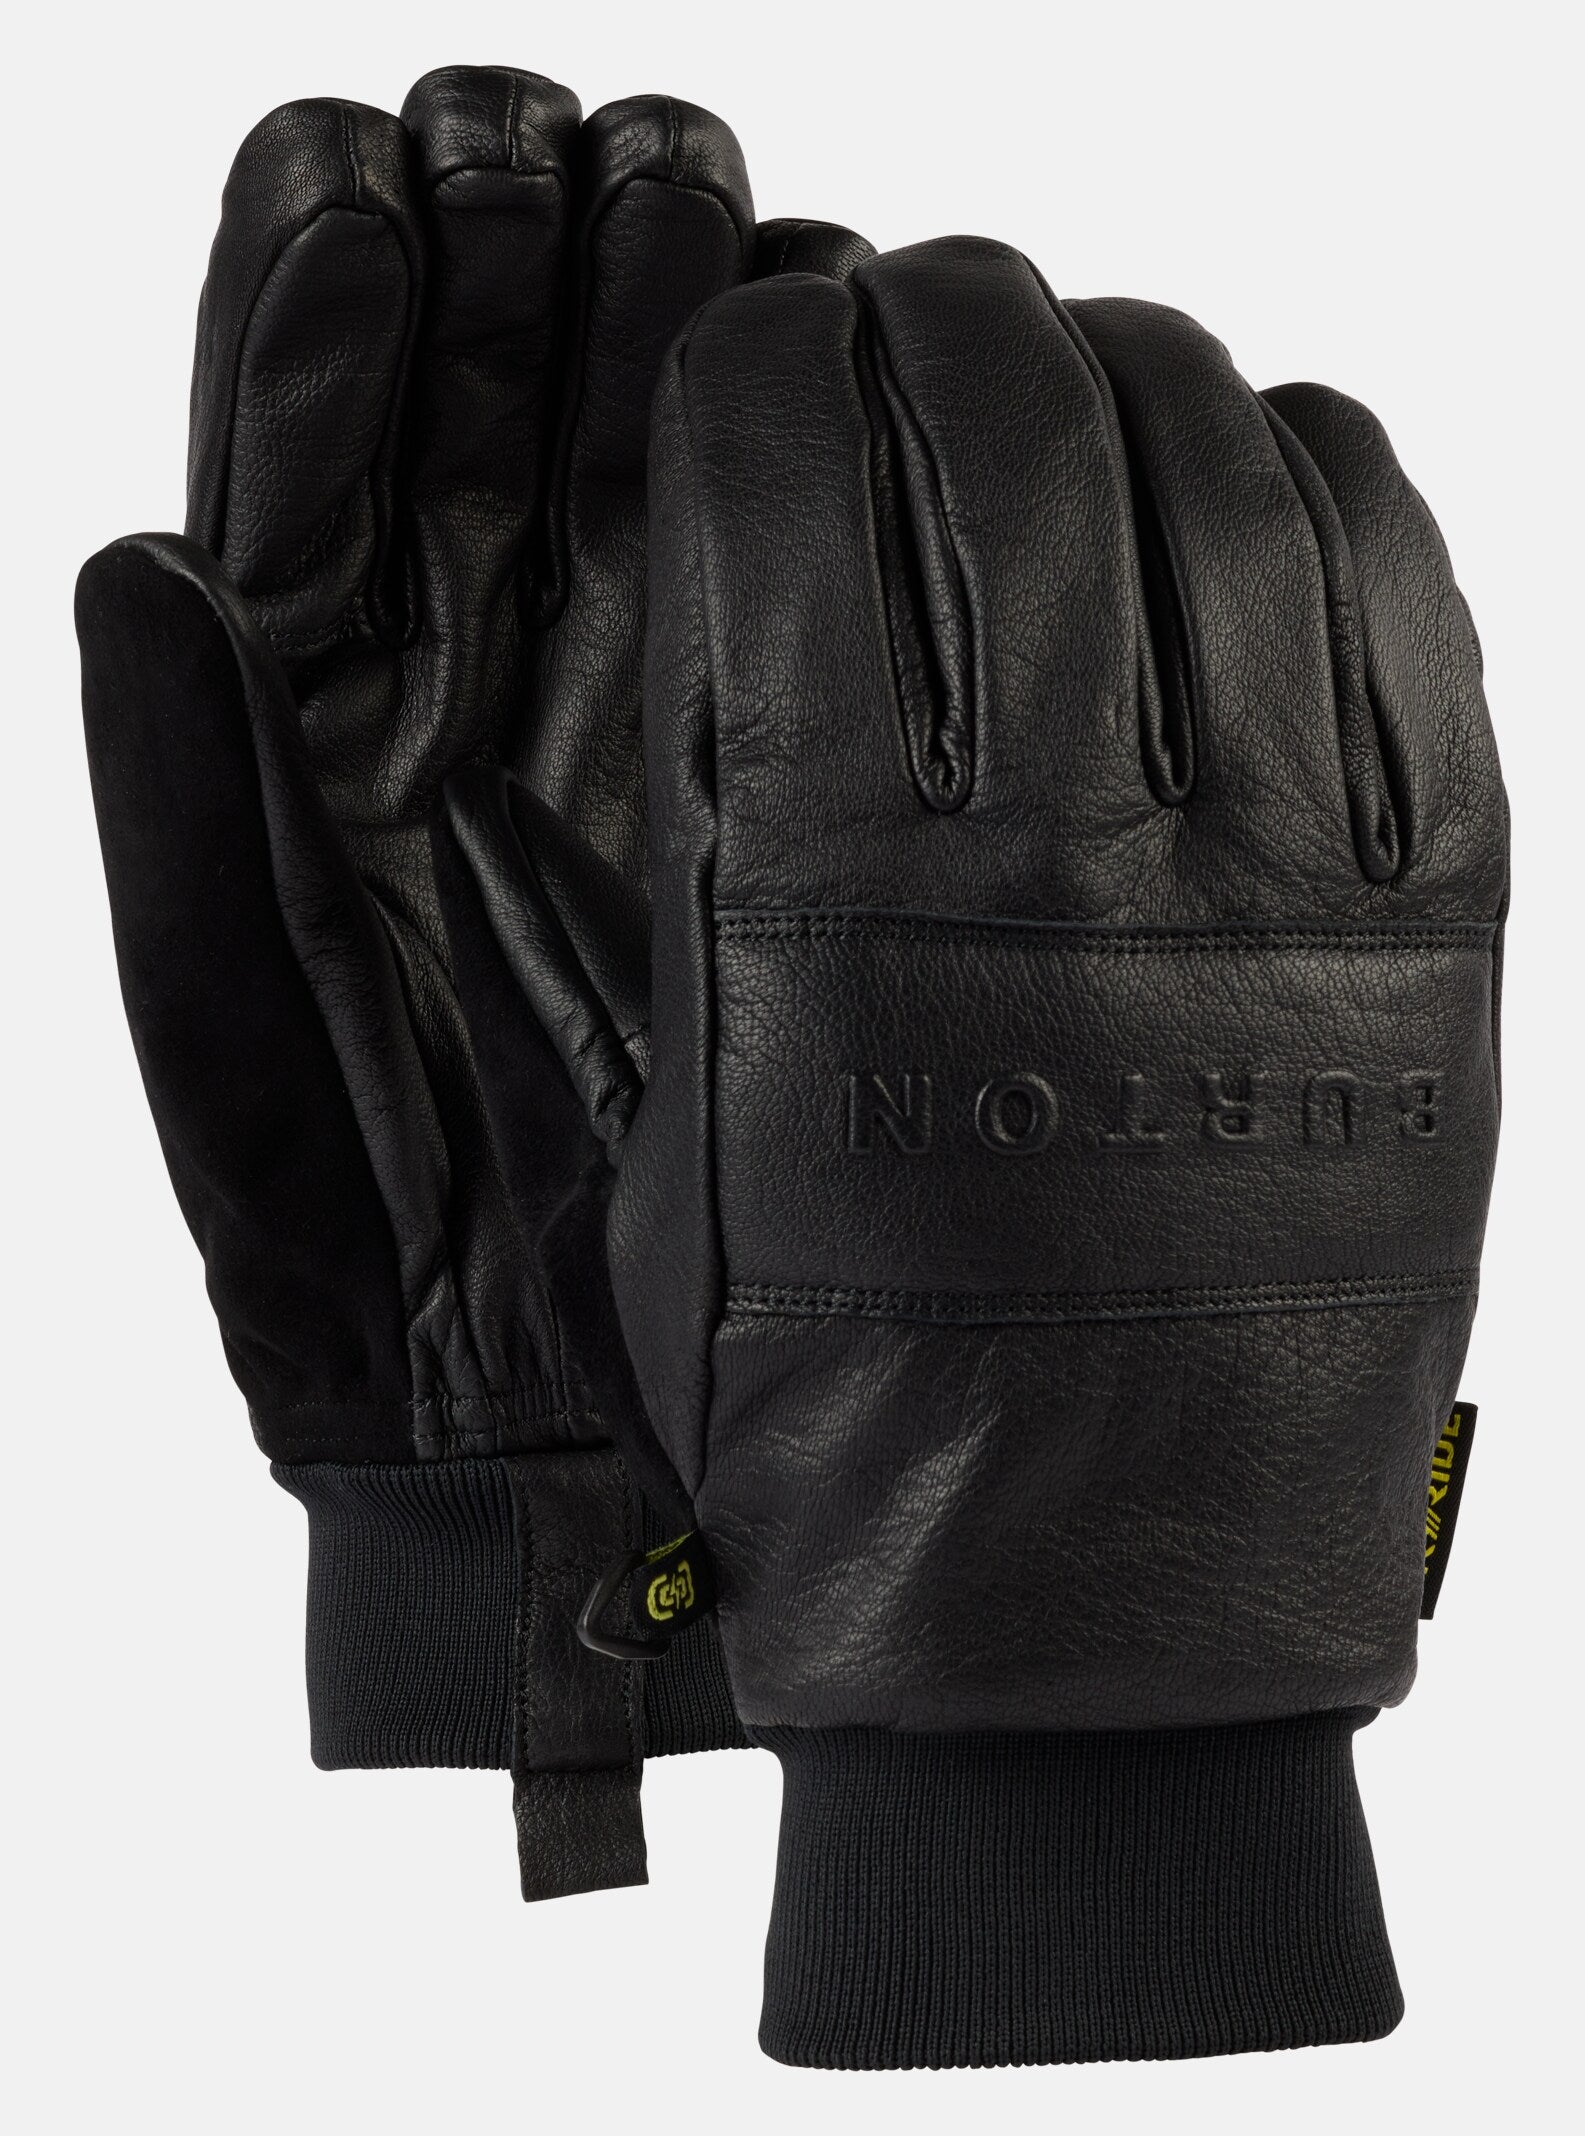 Skórzane rękawice Treeline Leather Gloves